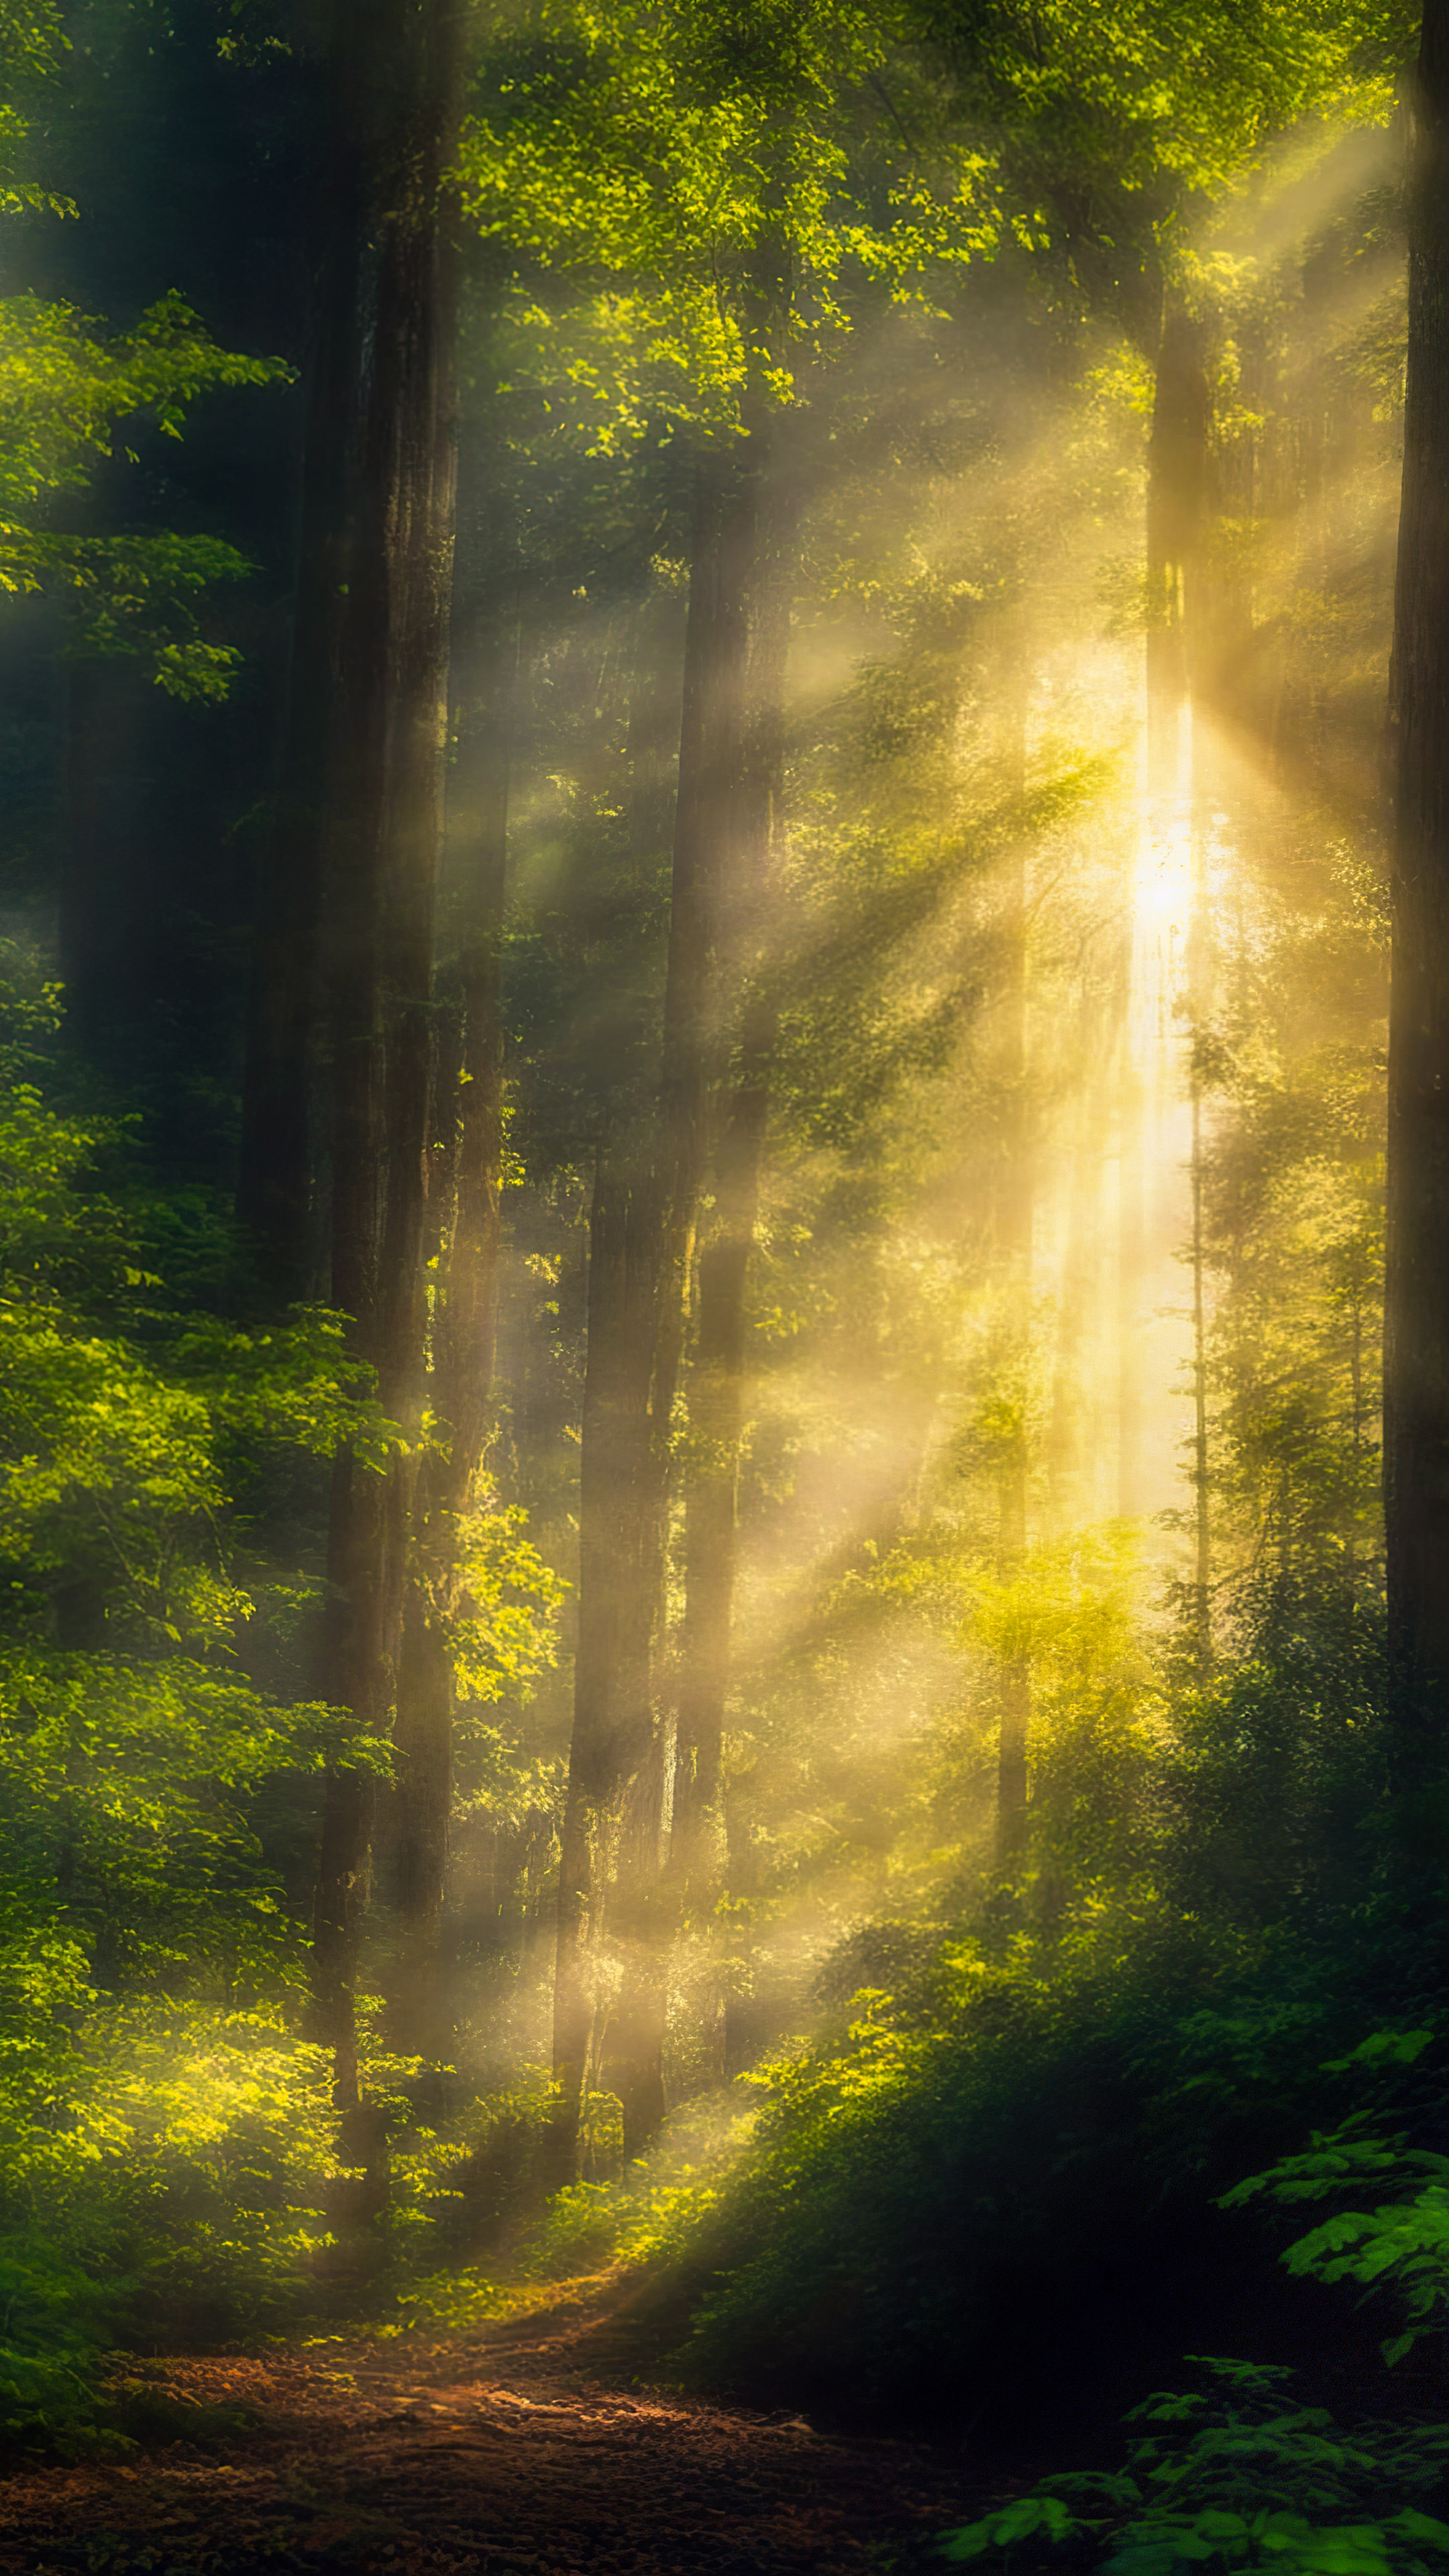 Téléchargez ce fond d'écran nature avec de belles images, présentant une scène sereine de forêt avec la lumière du soleil filtrant à travers la canopée dense, projetant des ombres mouchetées sur le sol de la forêt.